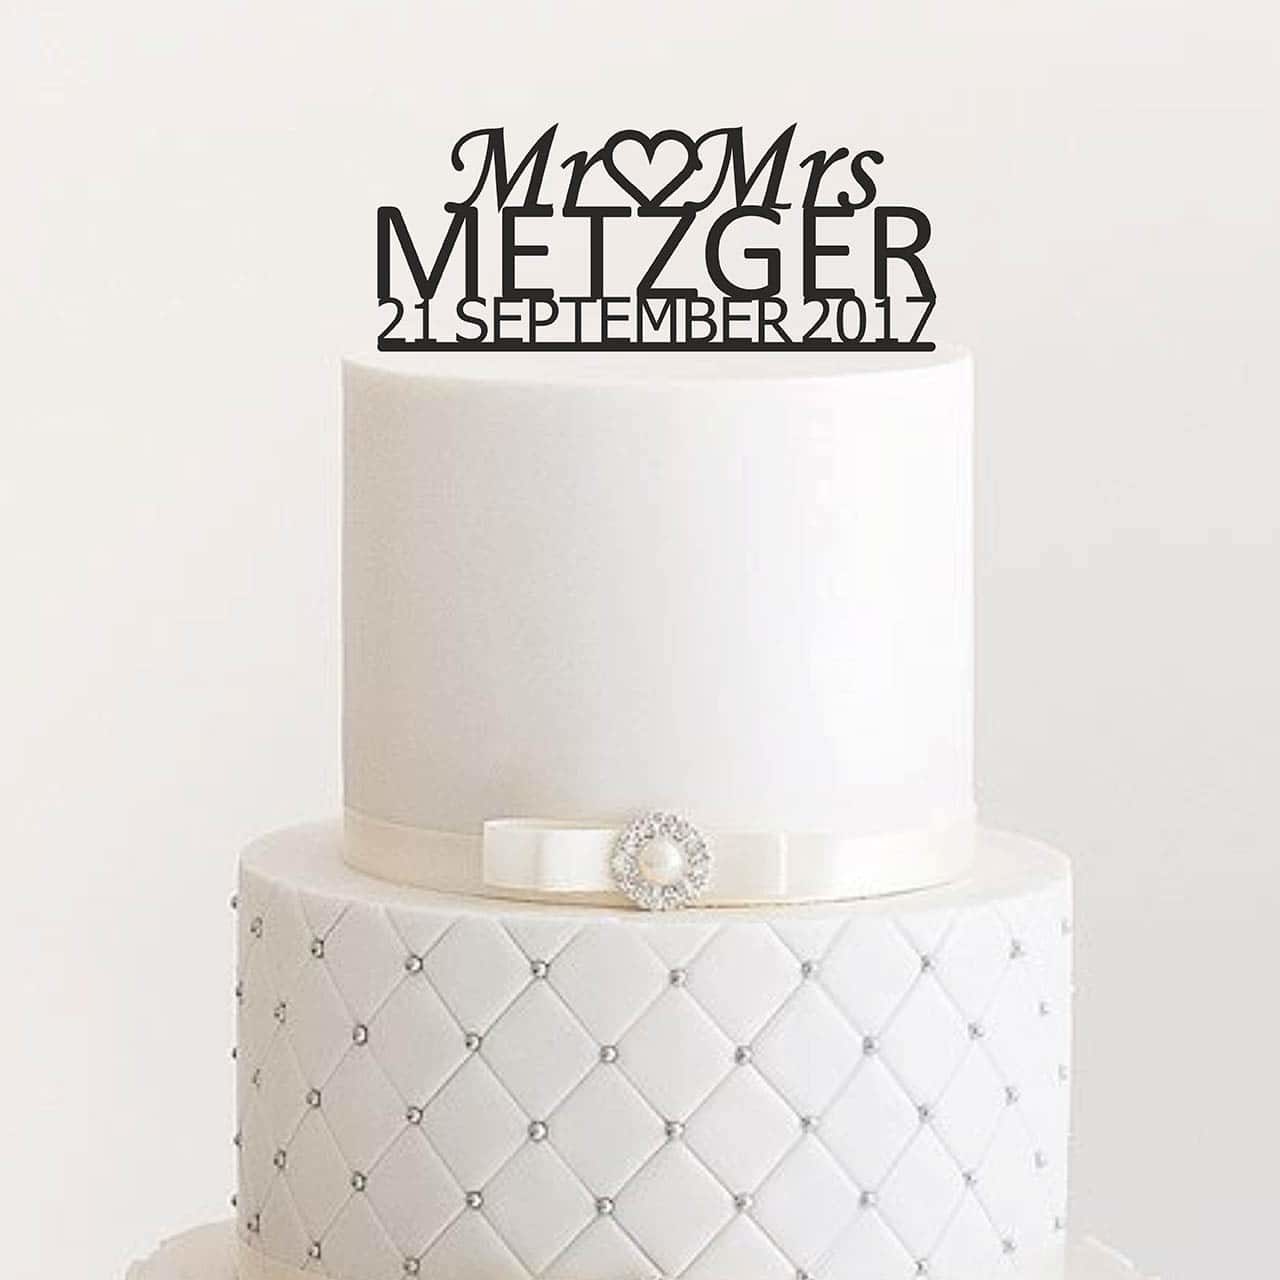 Cake Topper "Mr & Mrs mit Herz" - Personalisiert